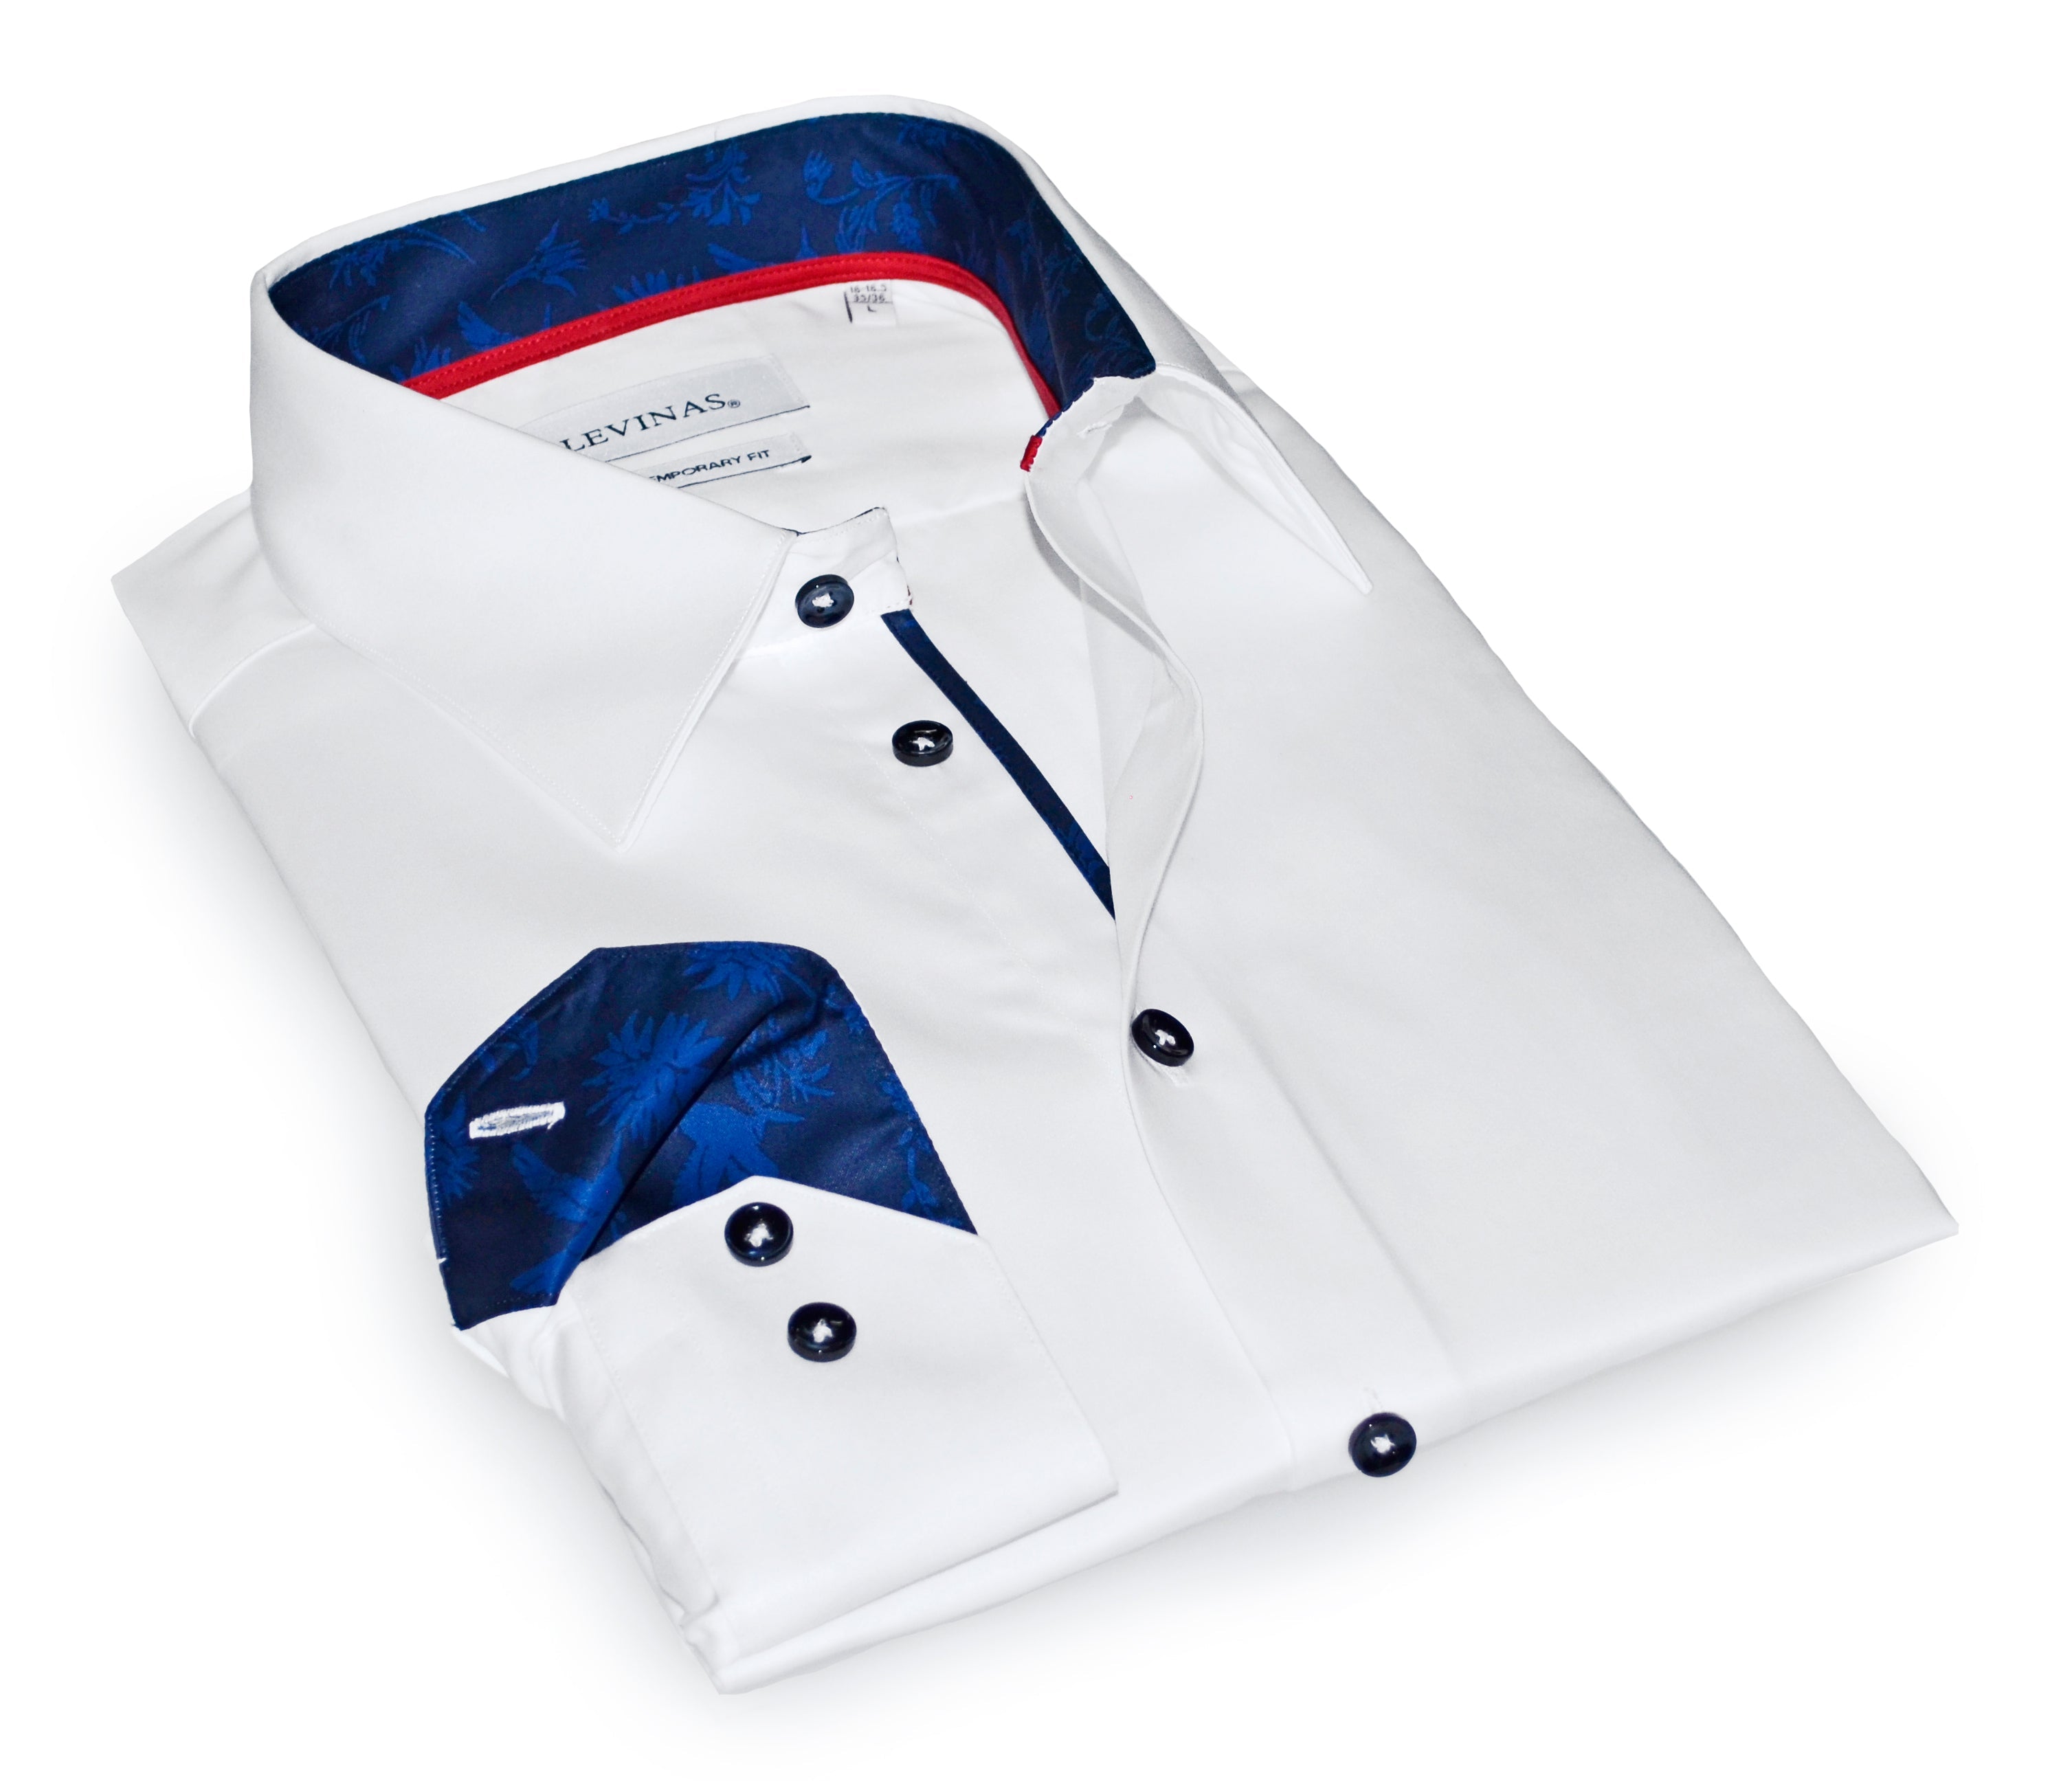 Designer Shirt Buttons - Rounded Edge Collar/Sleeve/Front Shirt Buttons - 1  Gross - Mottled Tan